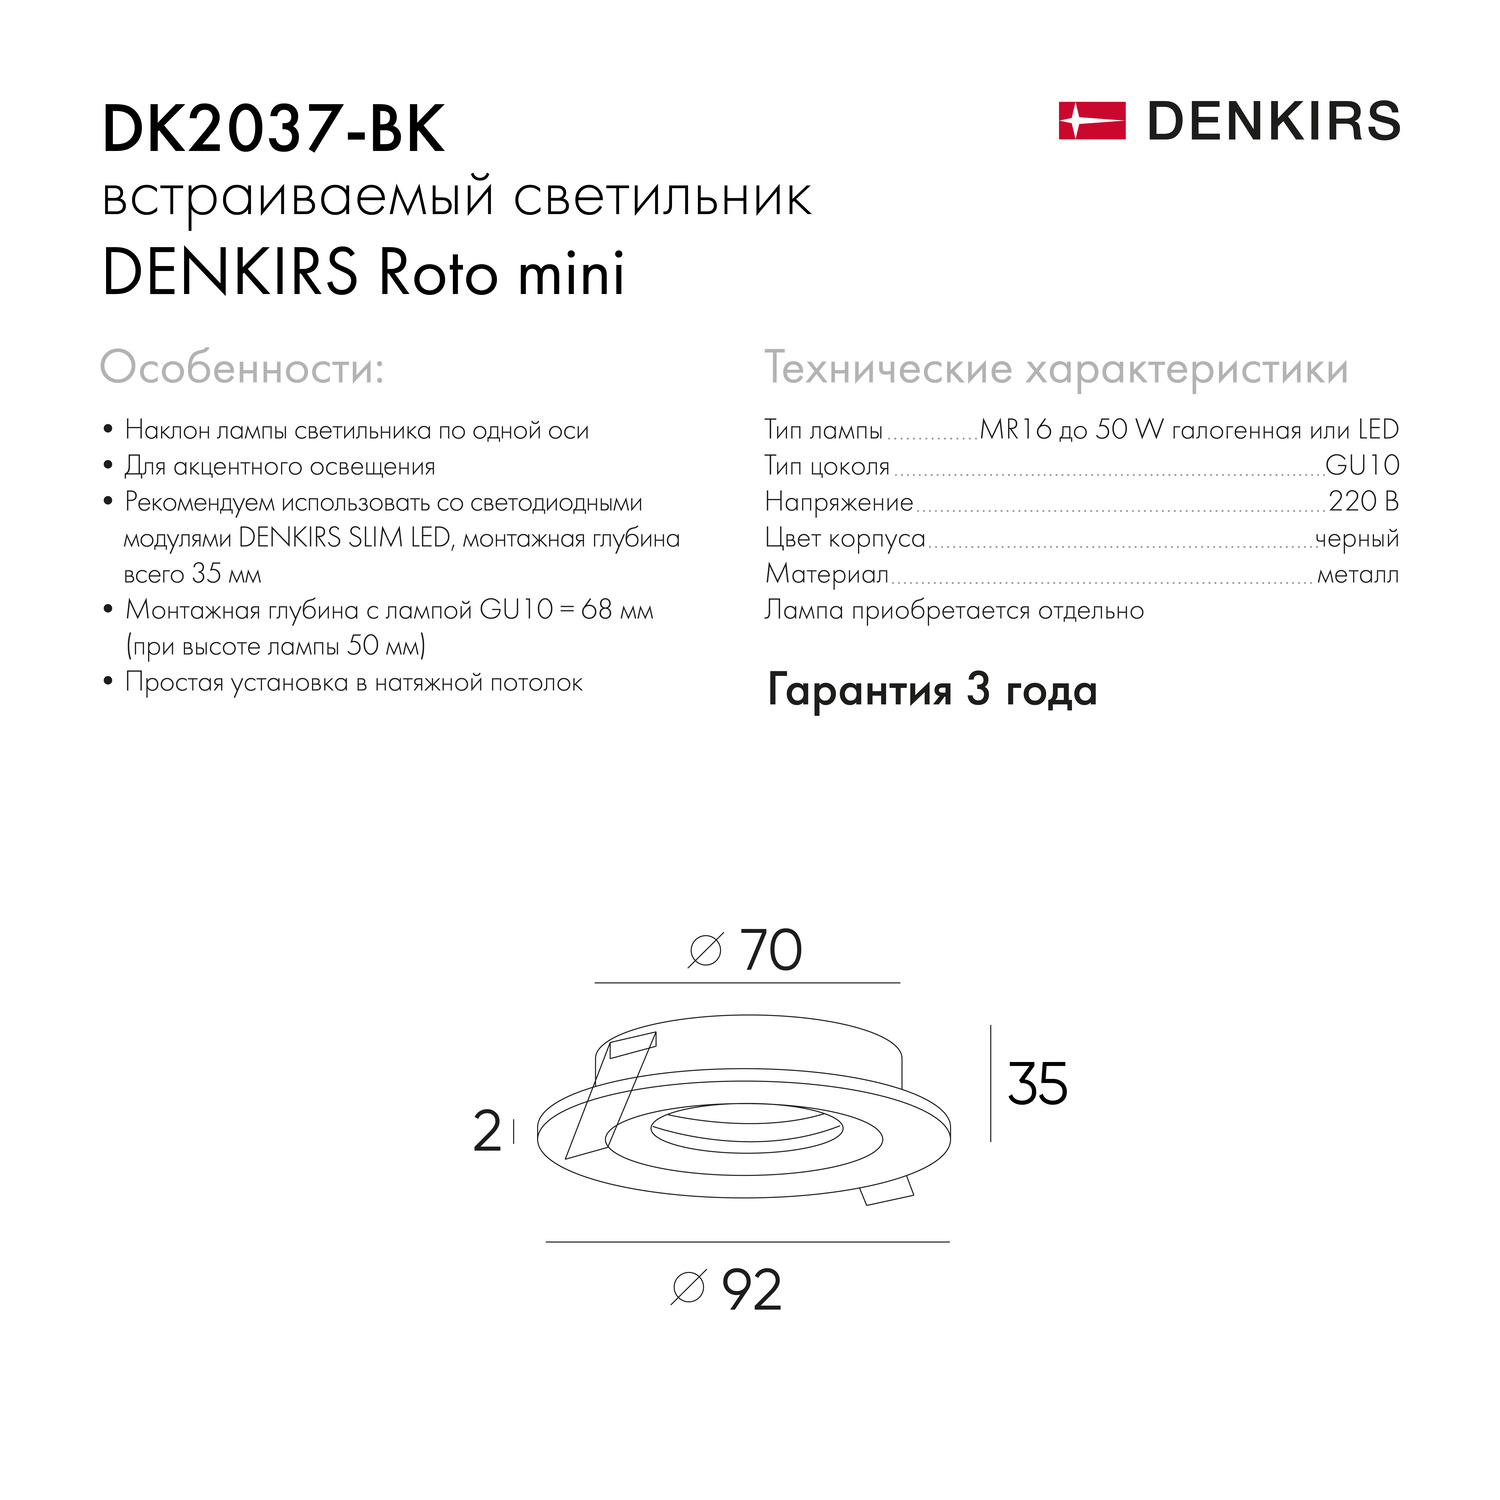 DK2037-BK